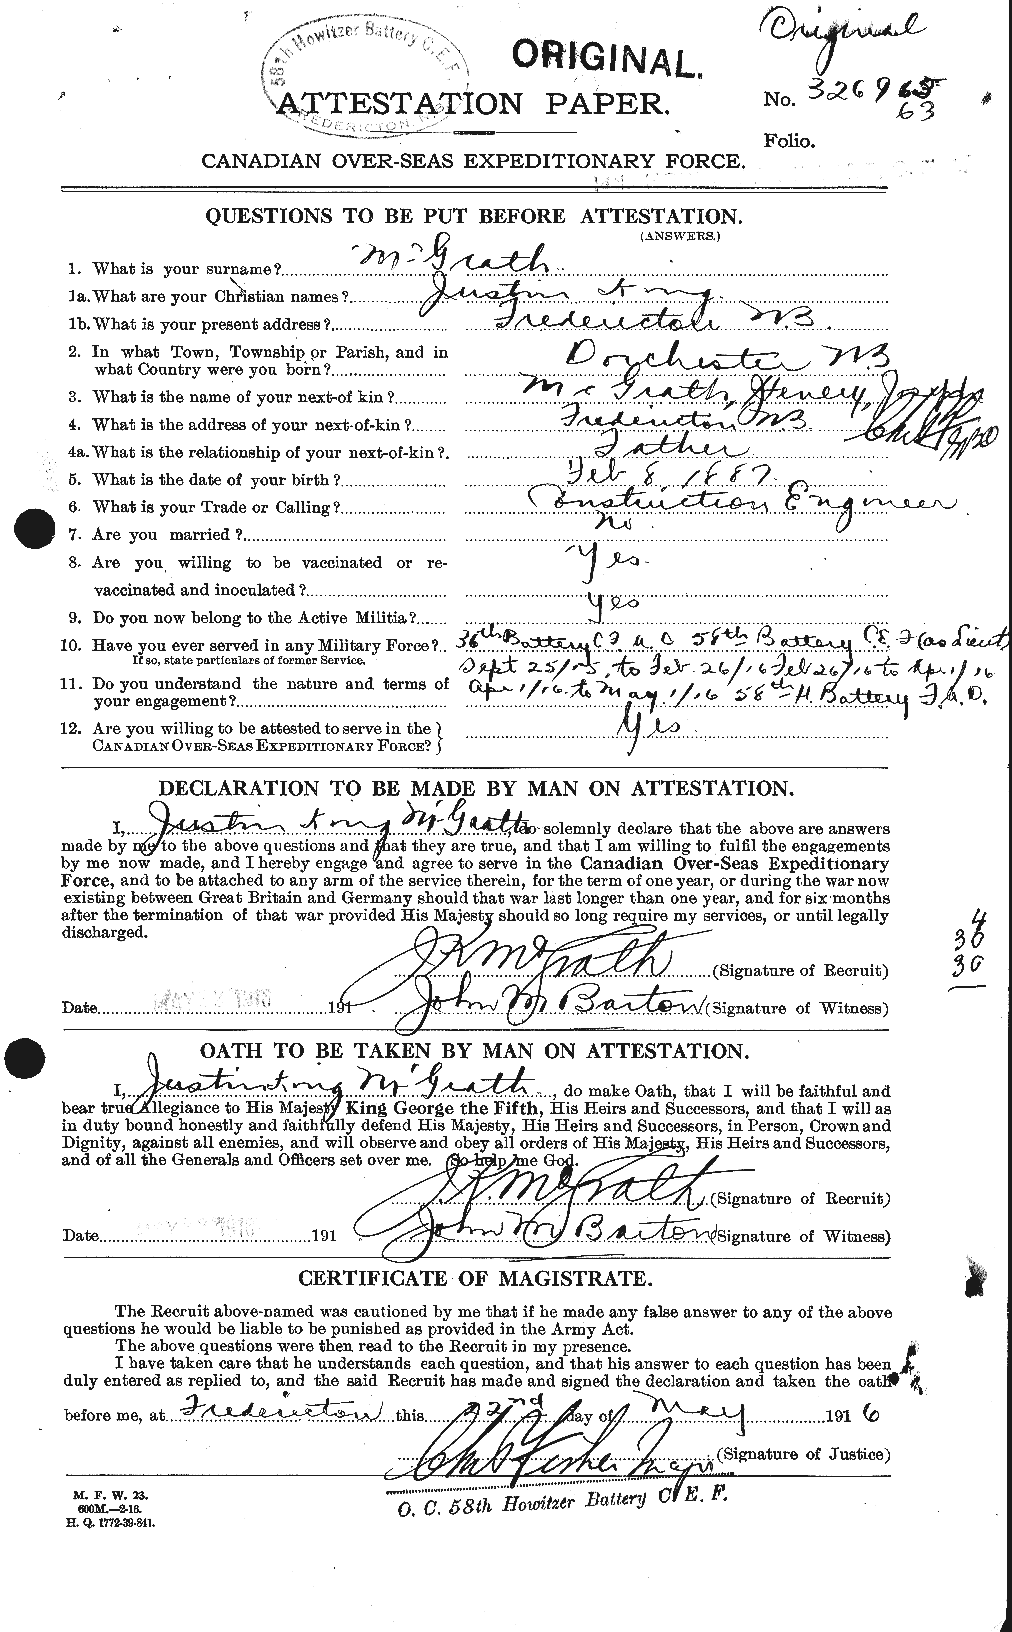 Dossiers du Personnel de la Première Guerre mondiale - CEC 523629a